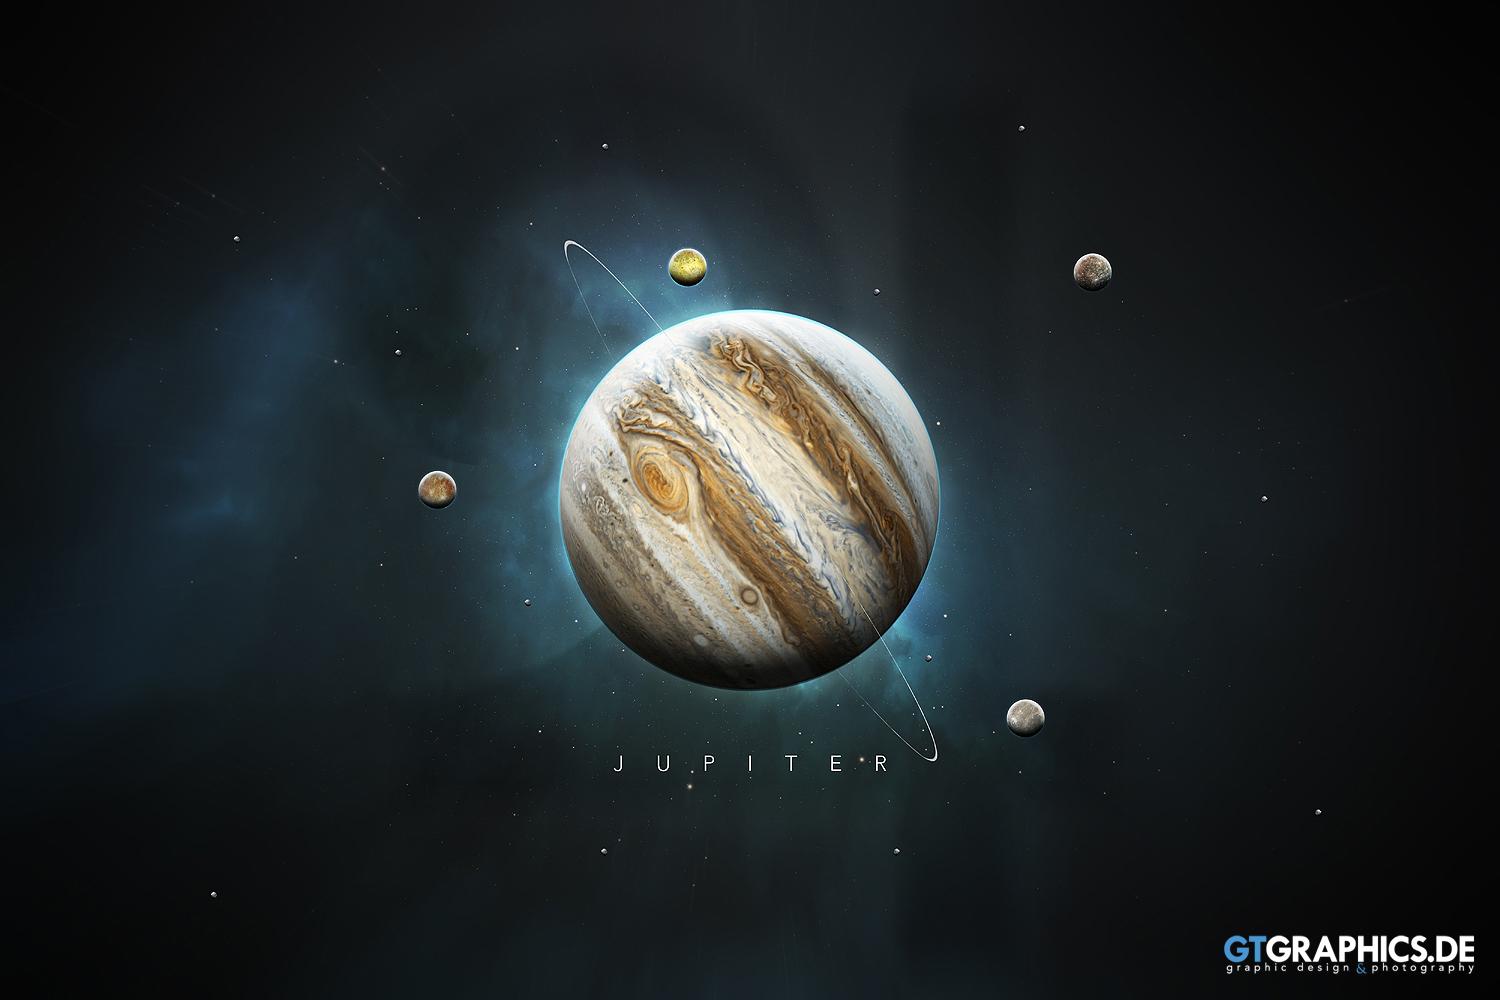 The Solar System Jupiter